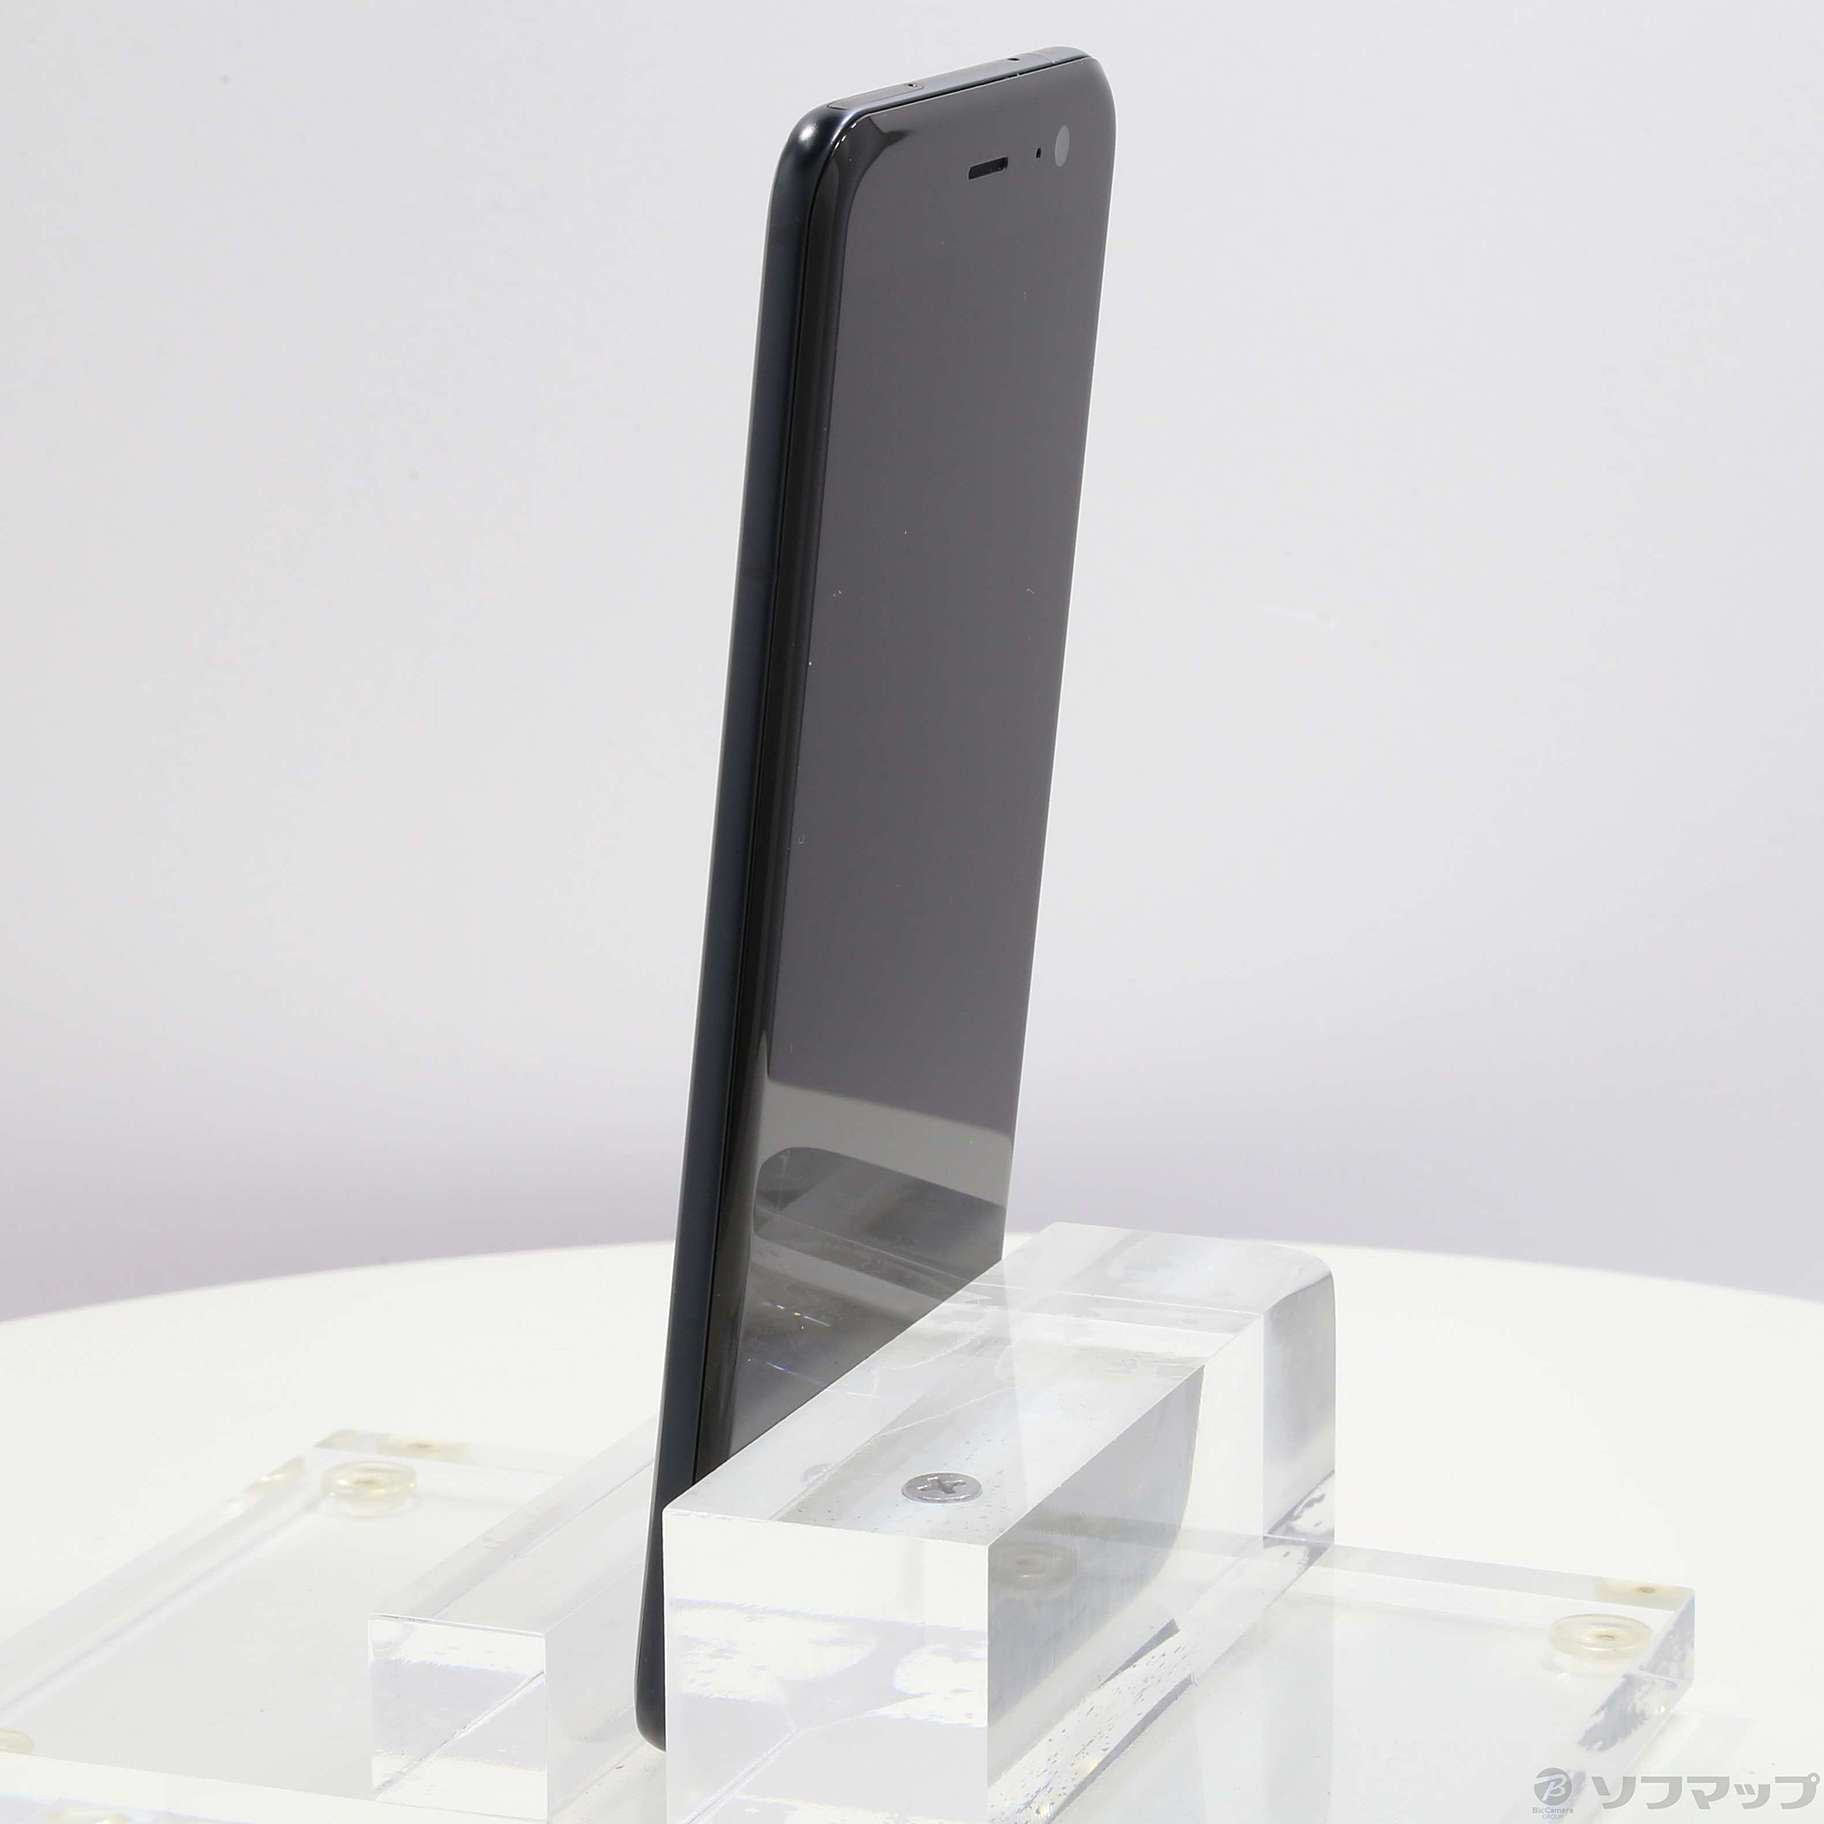 【日本購入】SoftBank HTC u11 ブリリアントブラック SIMフリー スマートフォン本体